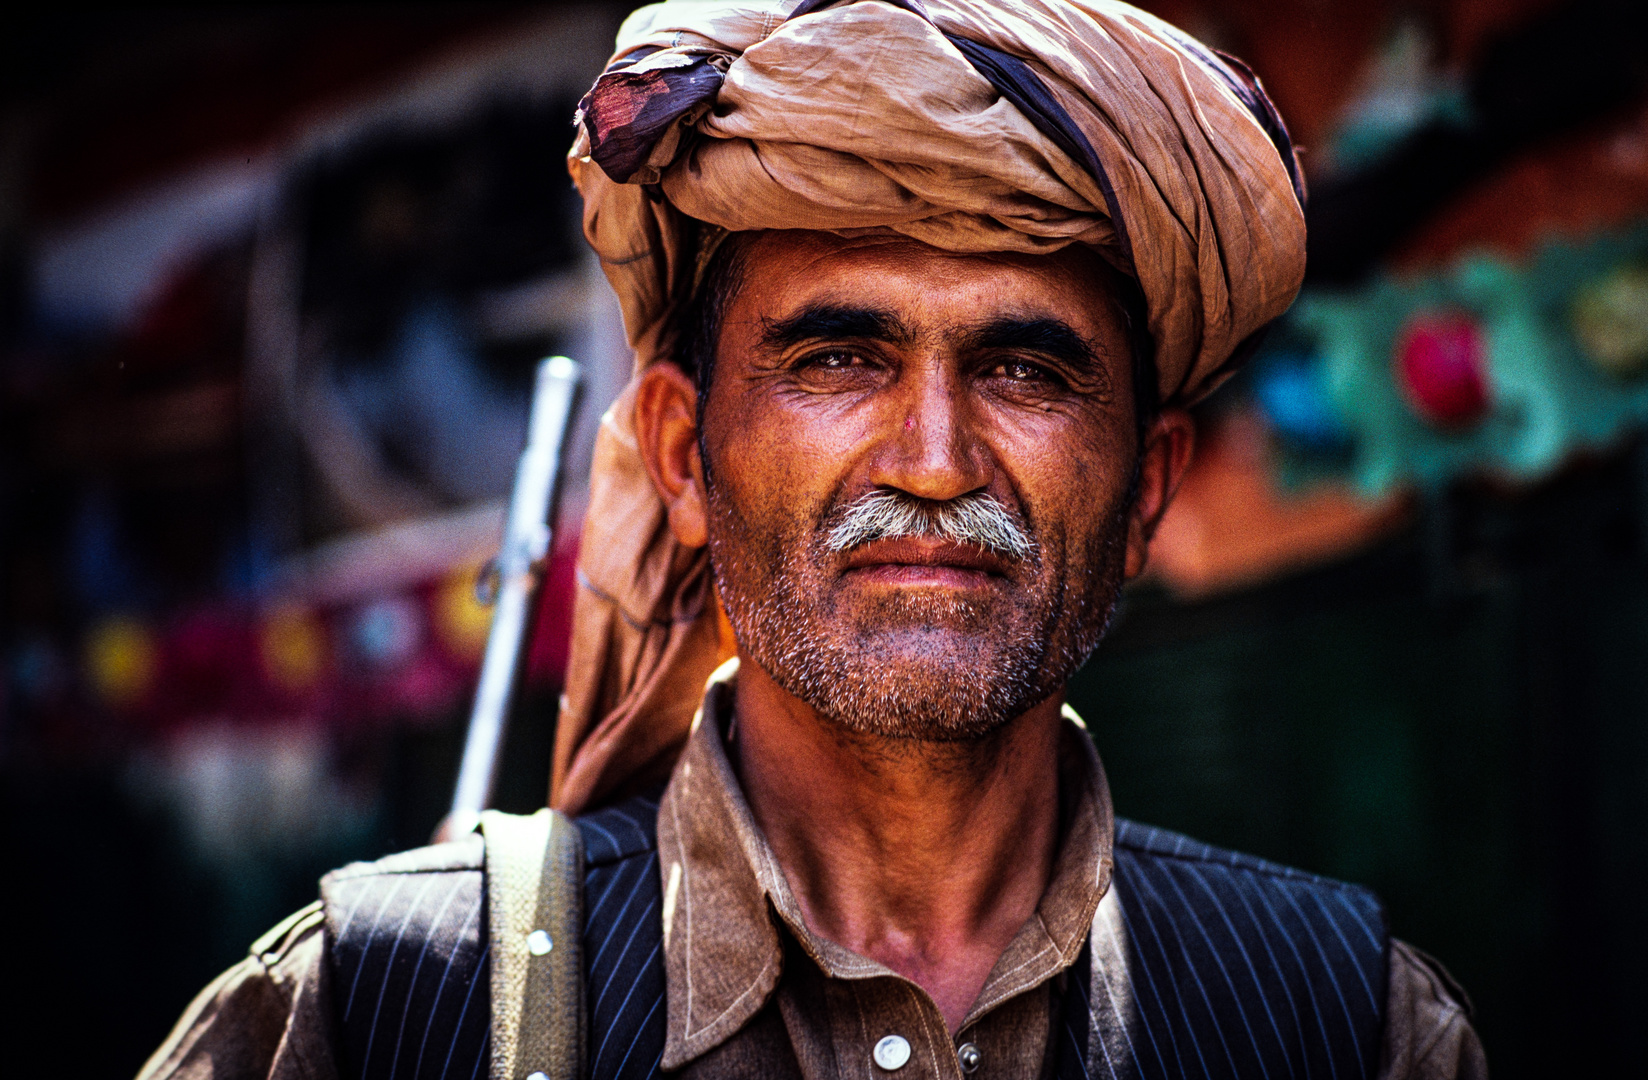 Pathan-Mann, Stammesgebiet an der afghanischen Grenze